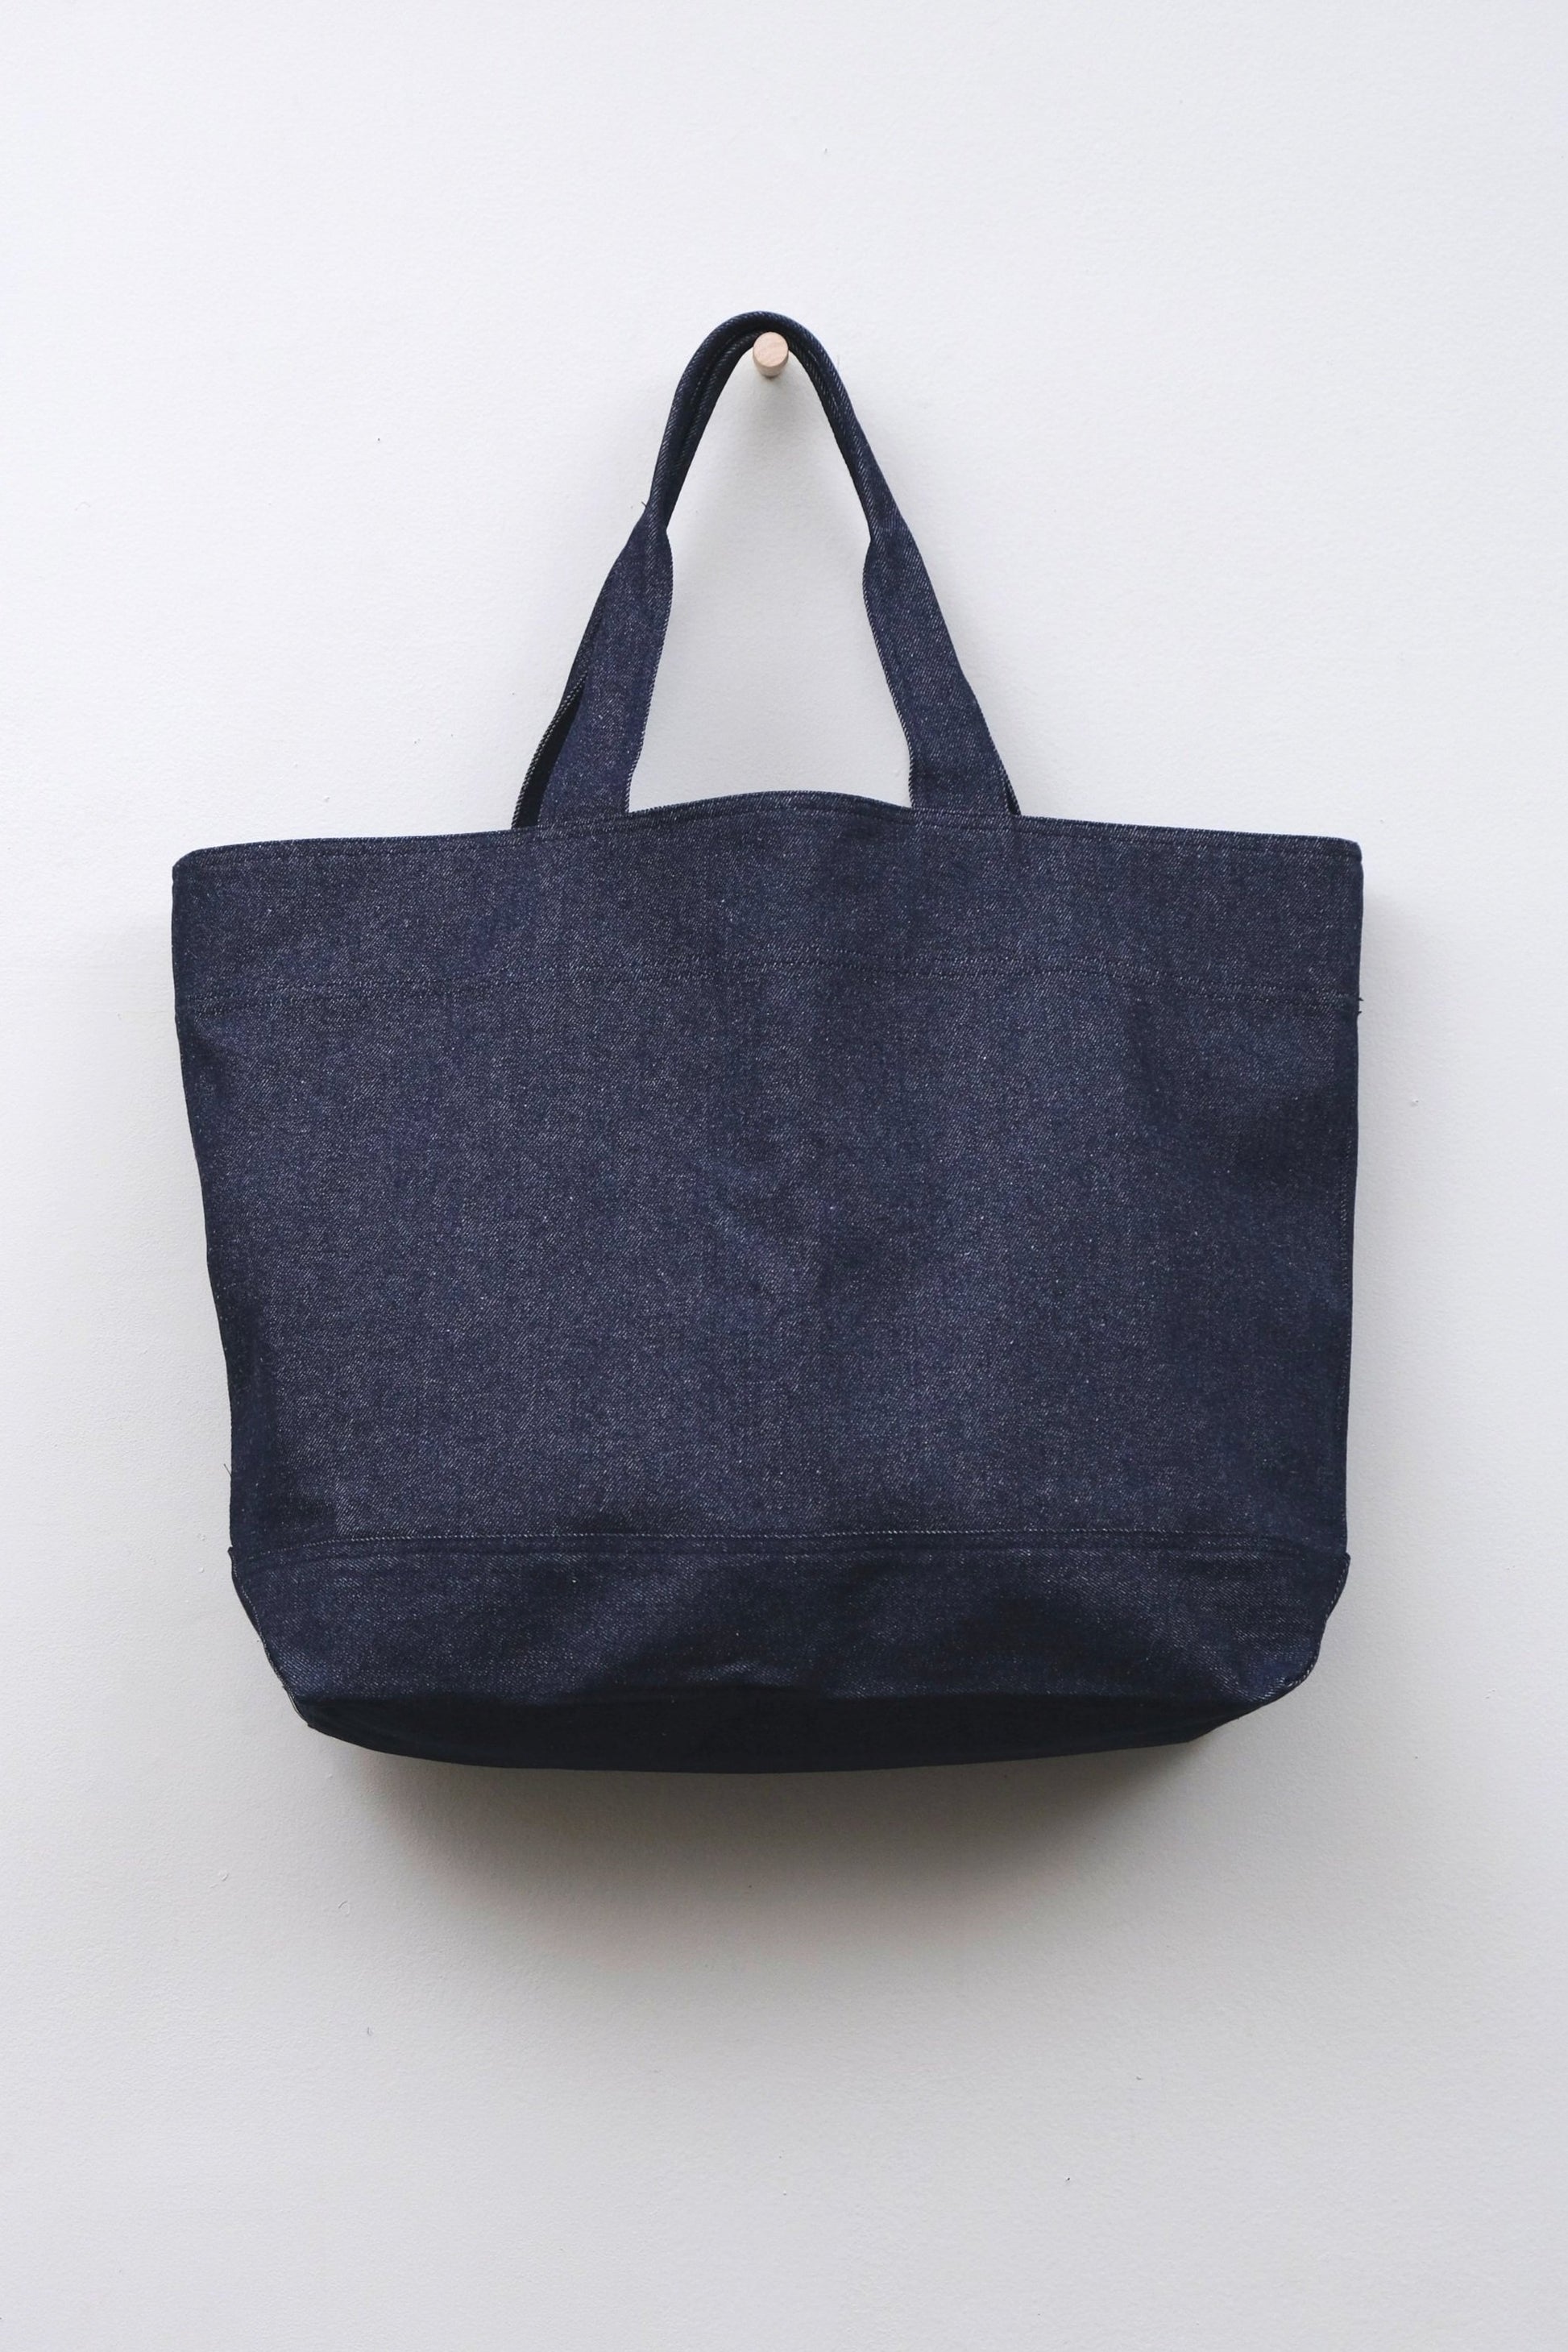 Denim Tote, Unique Sustainable Bags